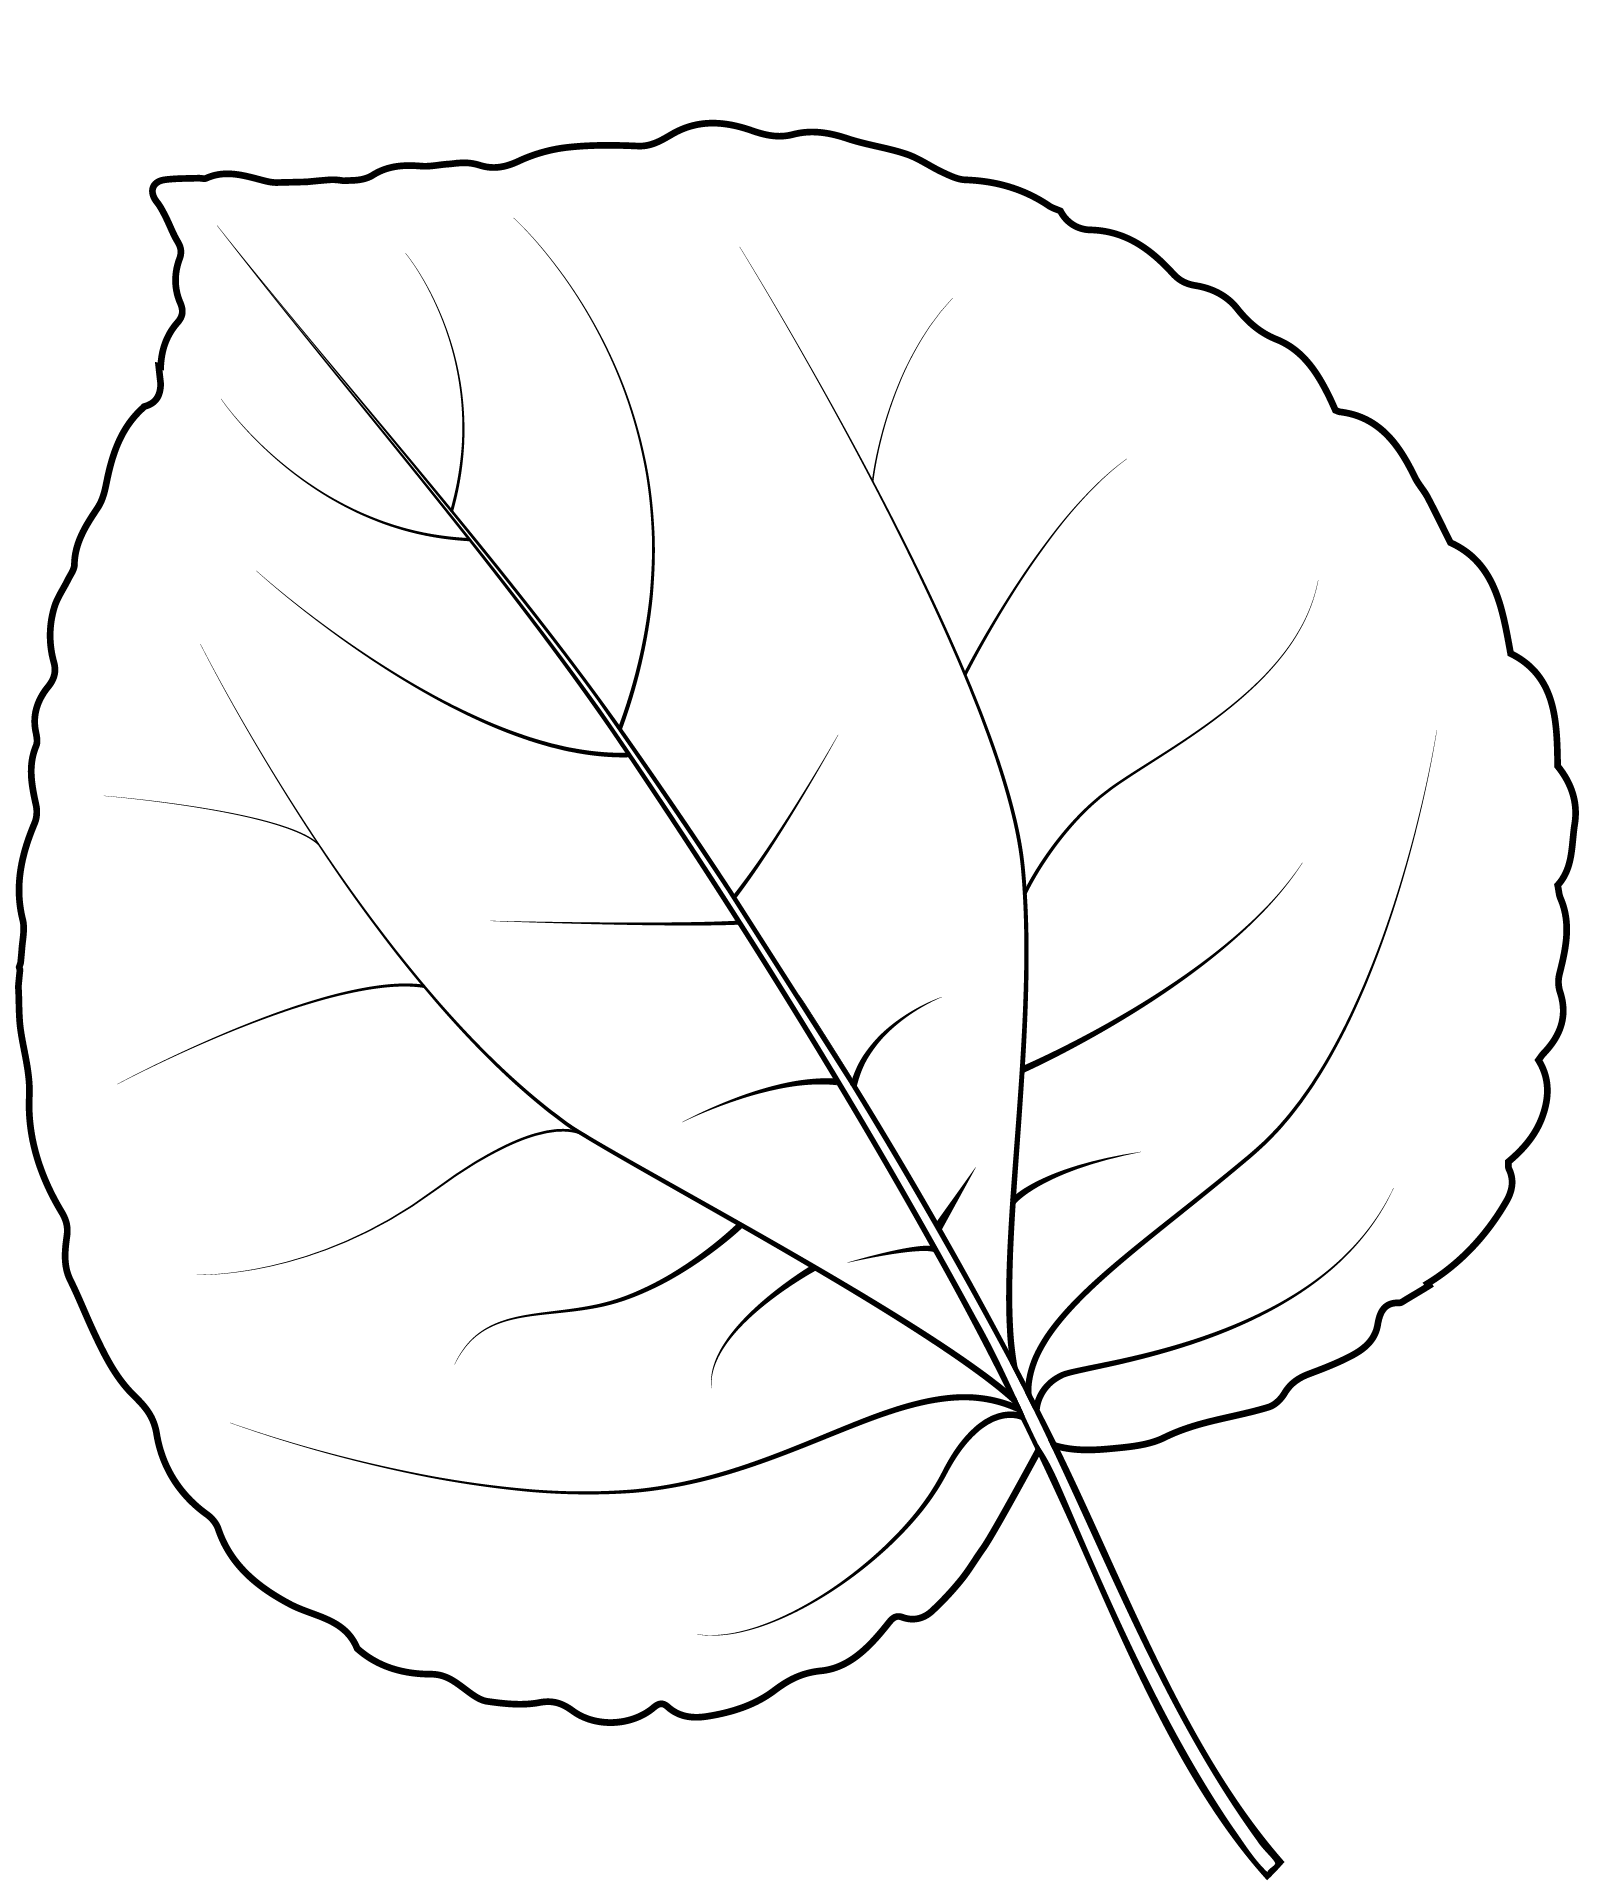 Katsura Tree Leaf